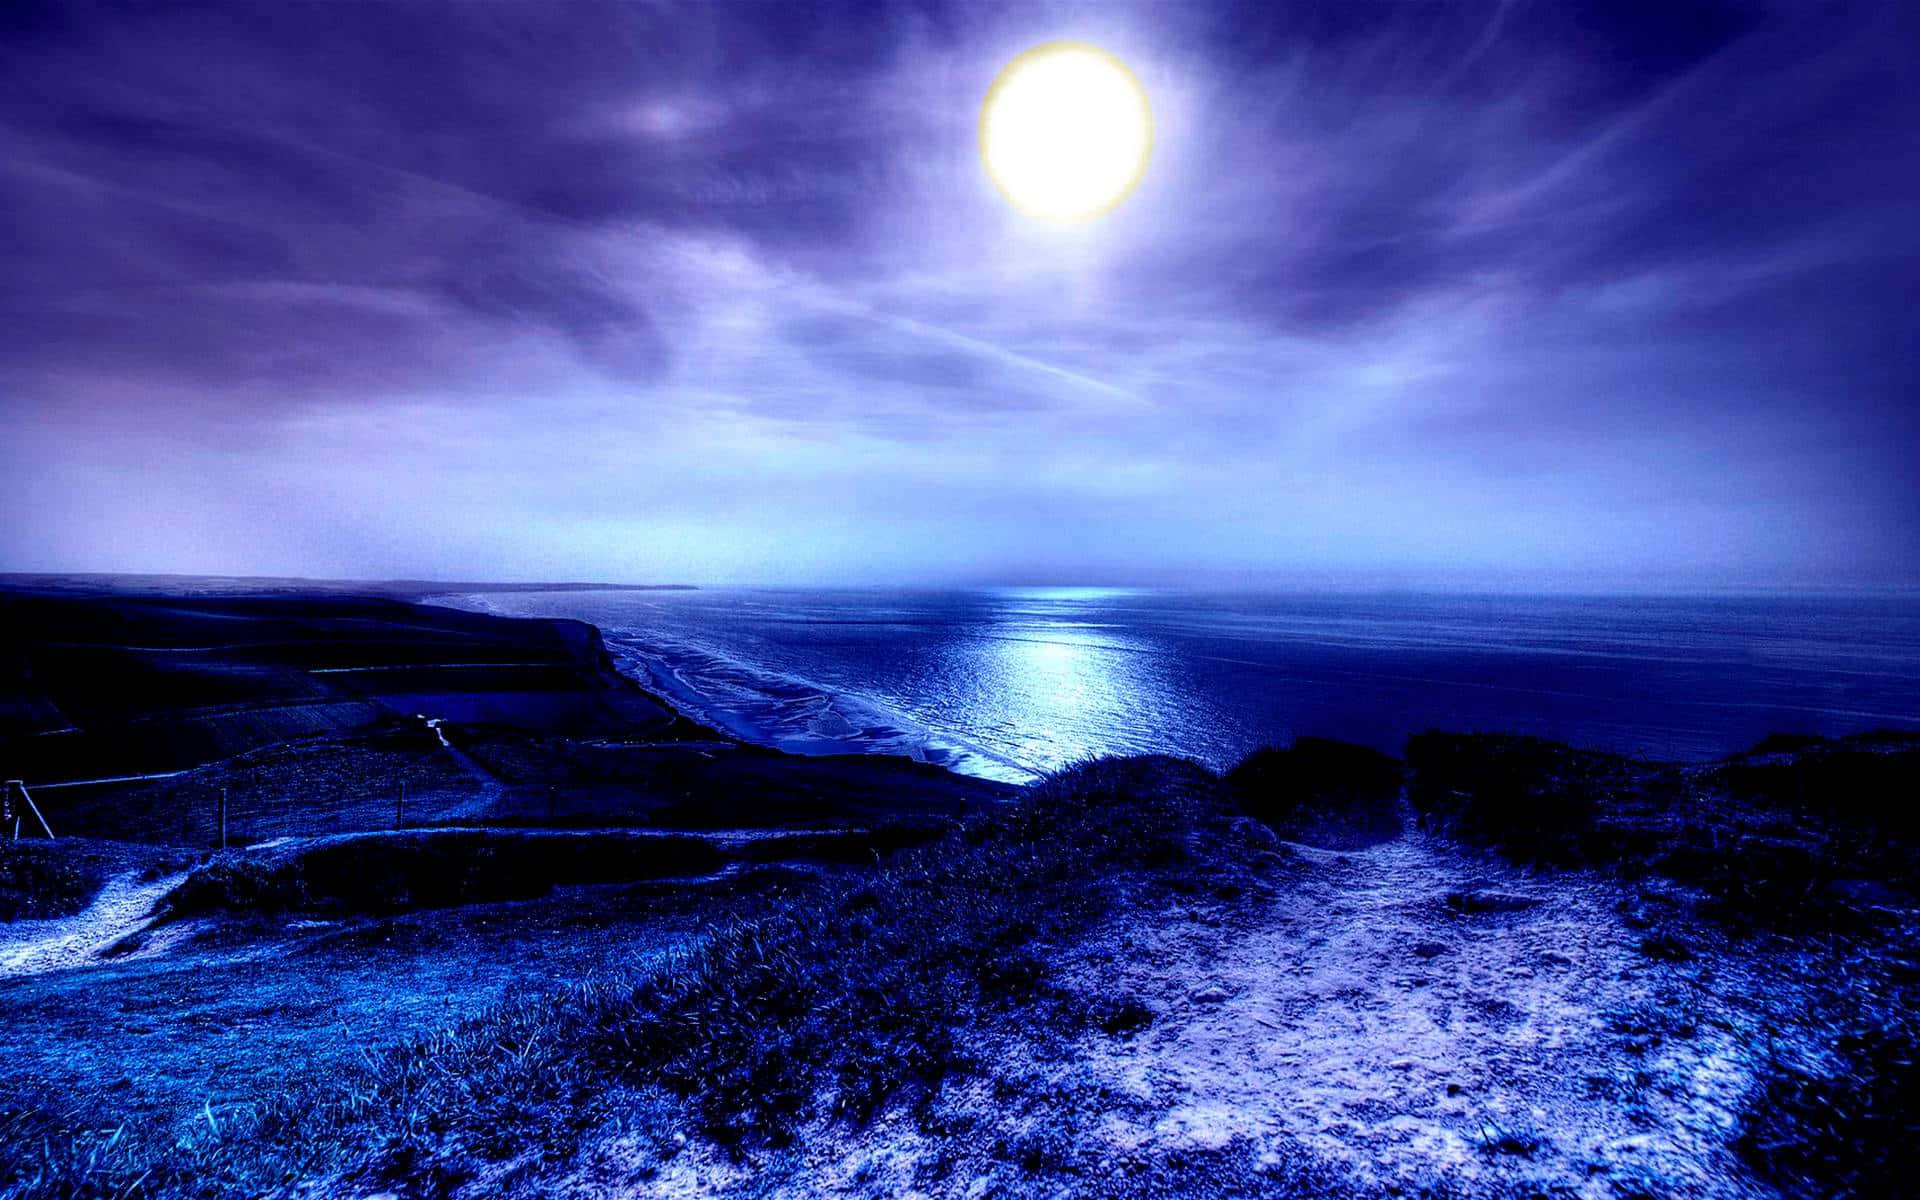 Serene moonlit night by the ocean